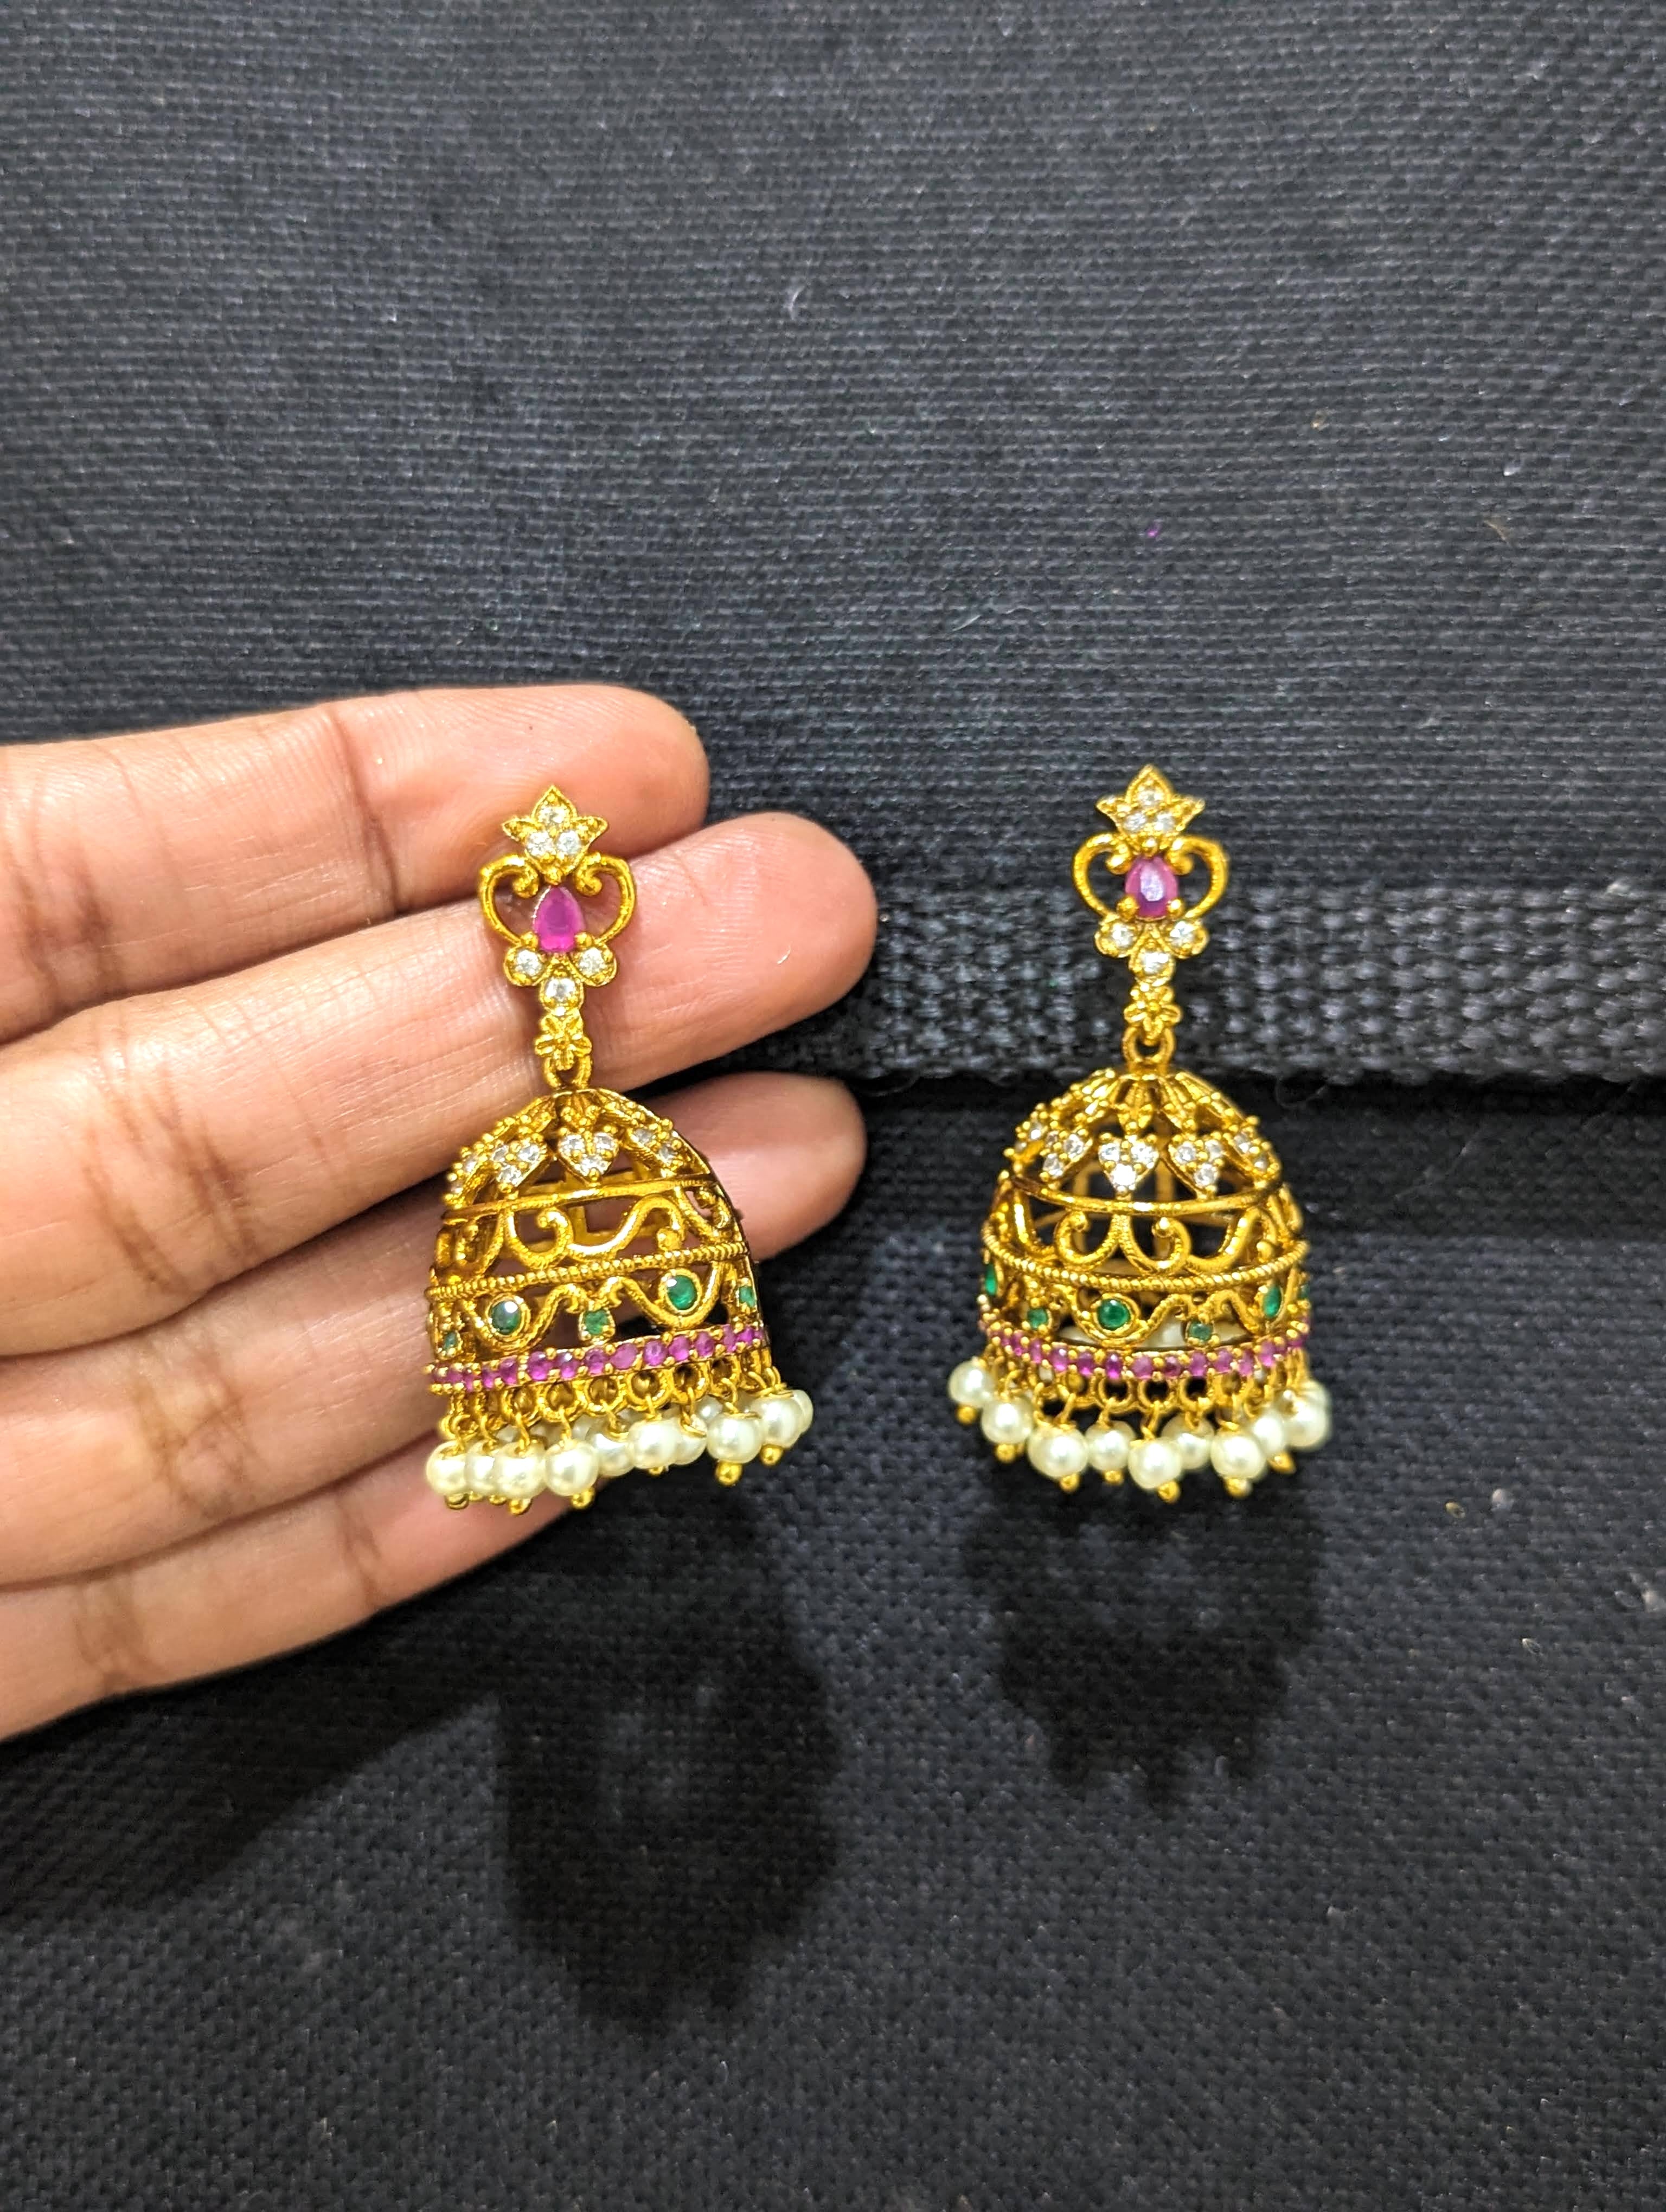 LeOvs Small Golden Jhumka Earrings with Black Beads